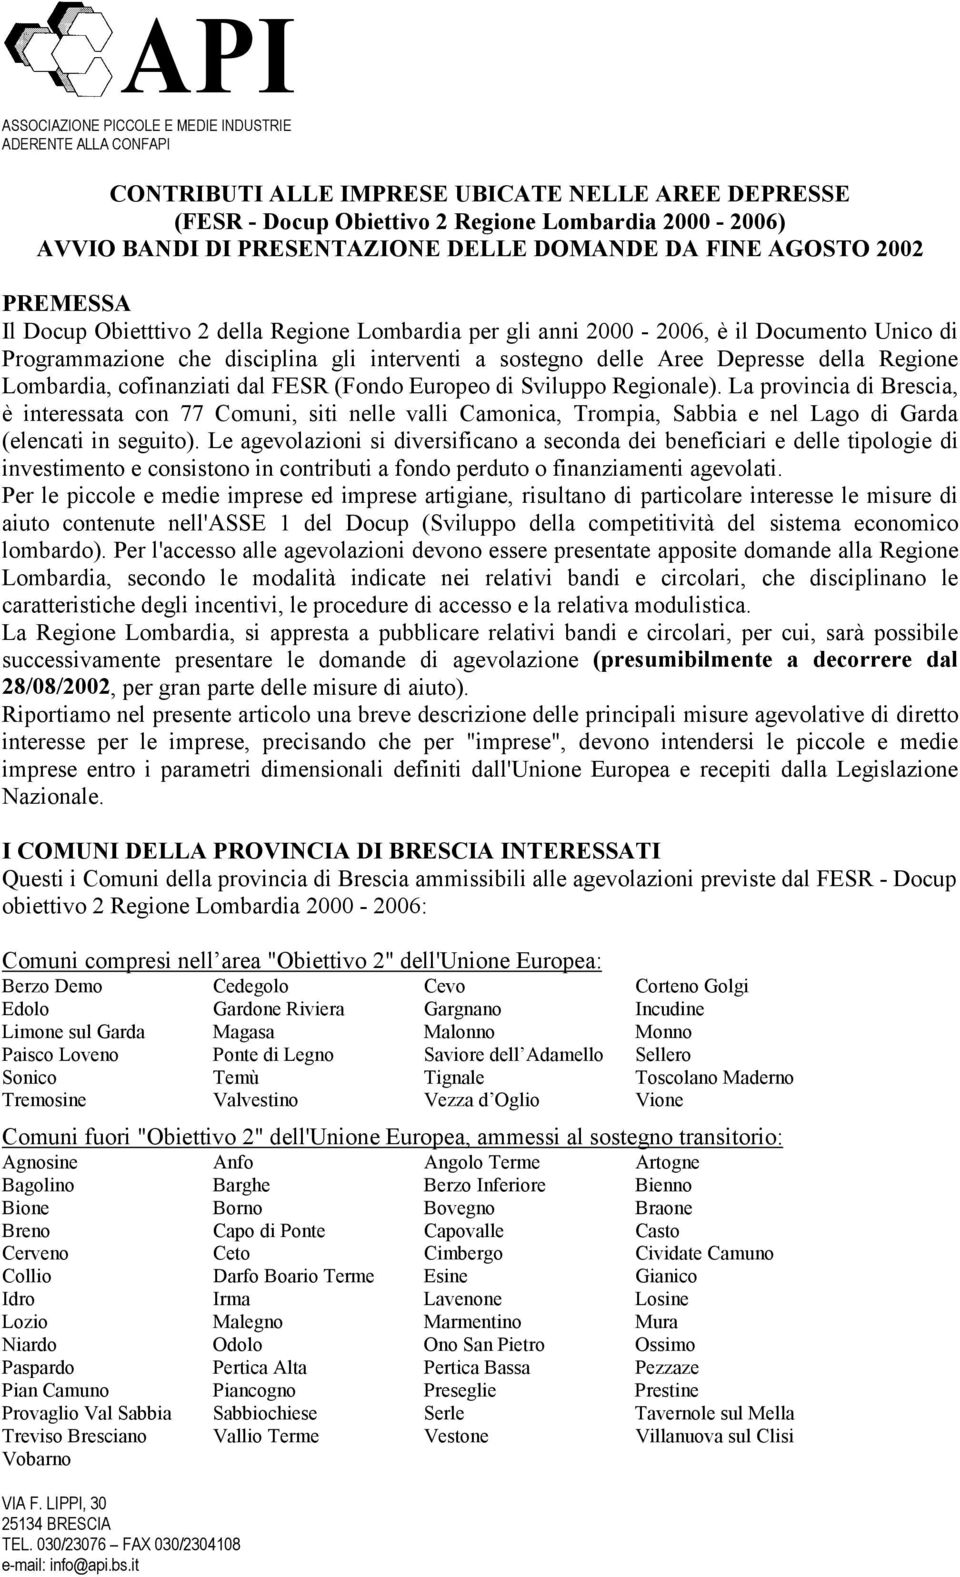 Aree Depresse della Regione Lombardia, cofinanziati dal FESR (Fondo Europeo di Sviluppo Regionale).